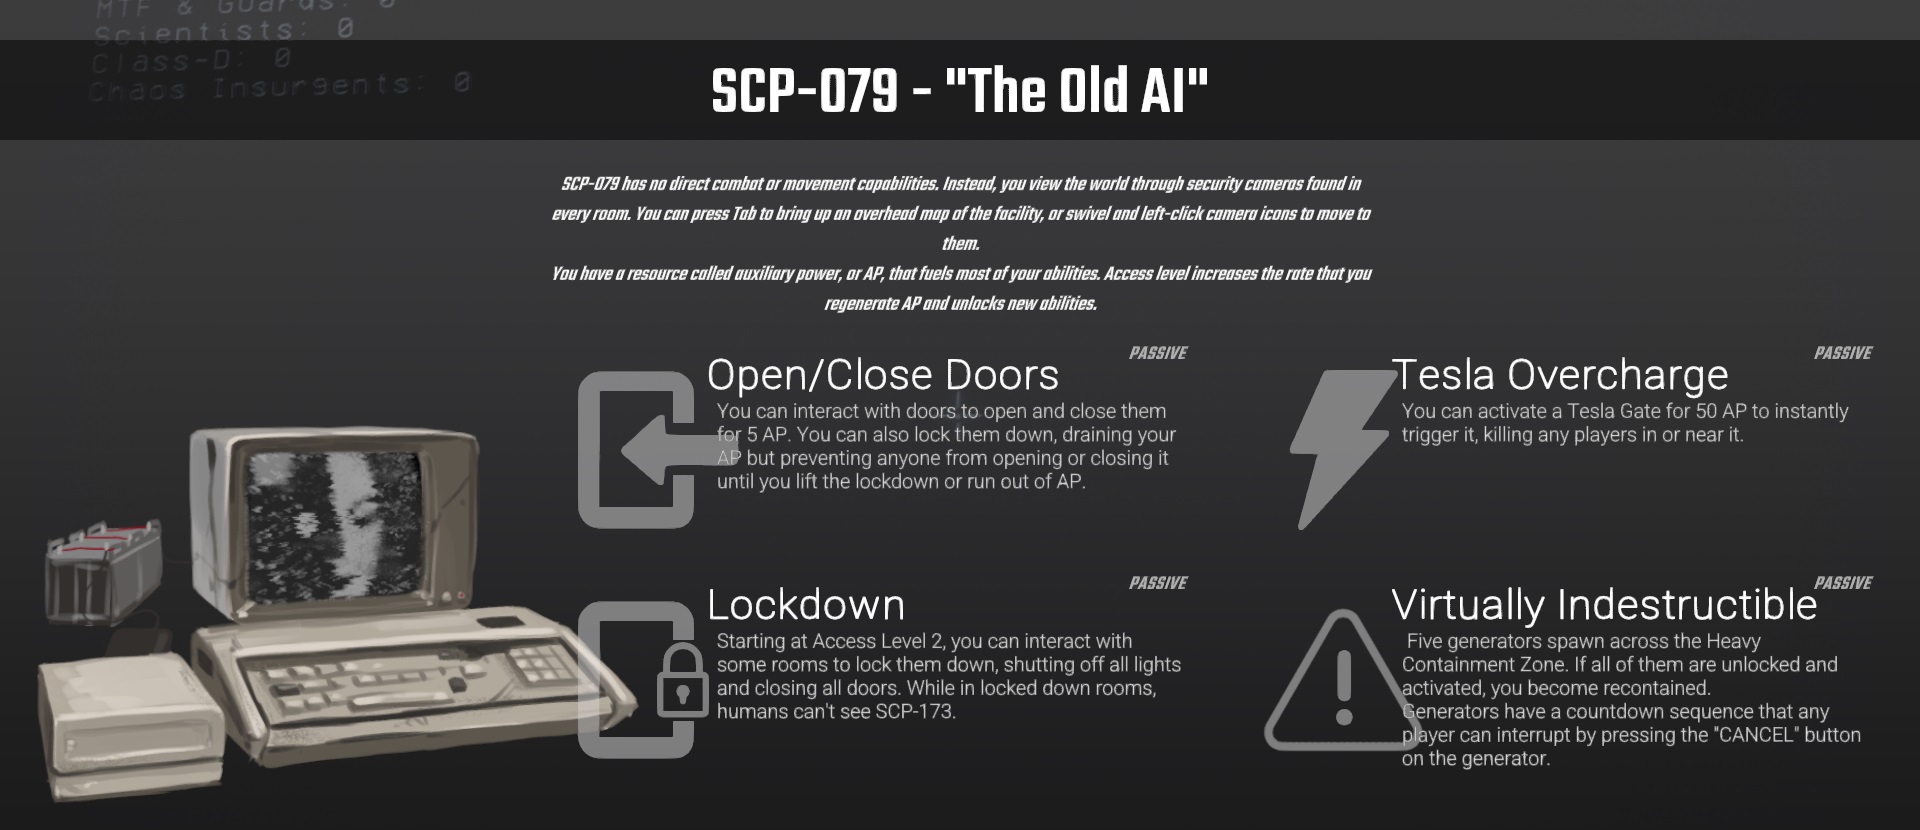 Heavy Containment Zone - SCP: Secret Laboratory Public Beta